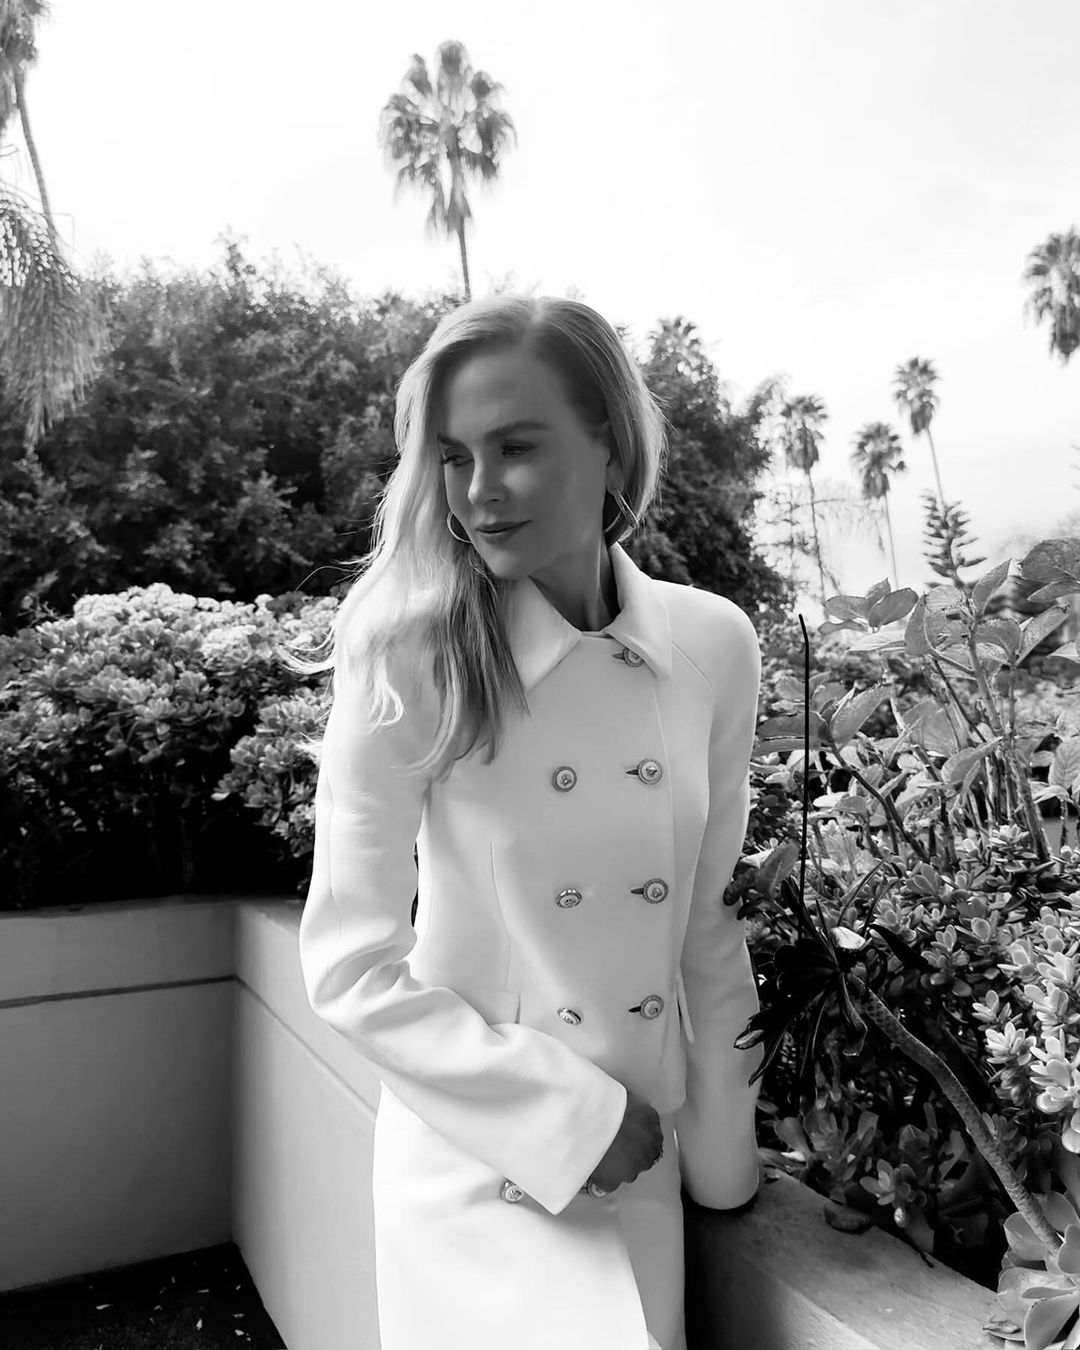 Η Nicole Kidman φόρεσε το λευκό παλτό την κομψή και chic τάση του χειμώνα